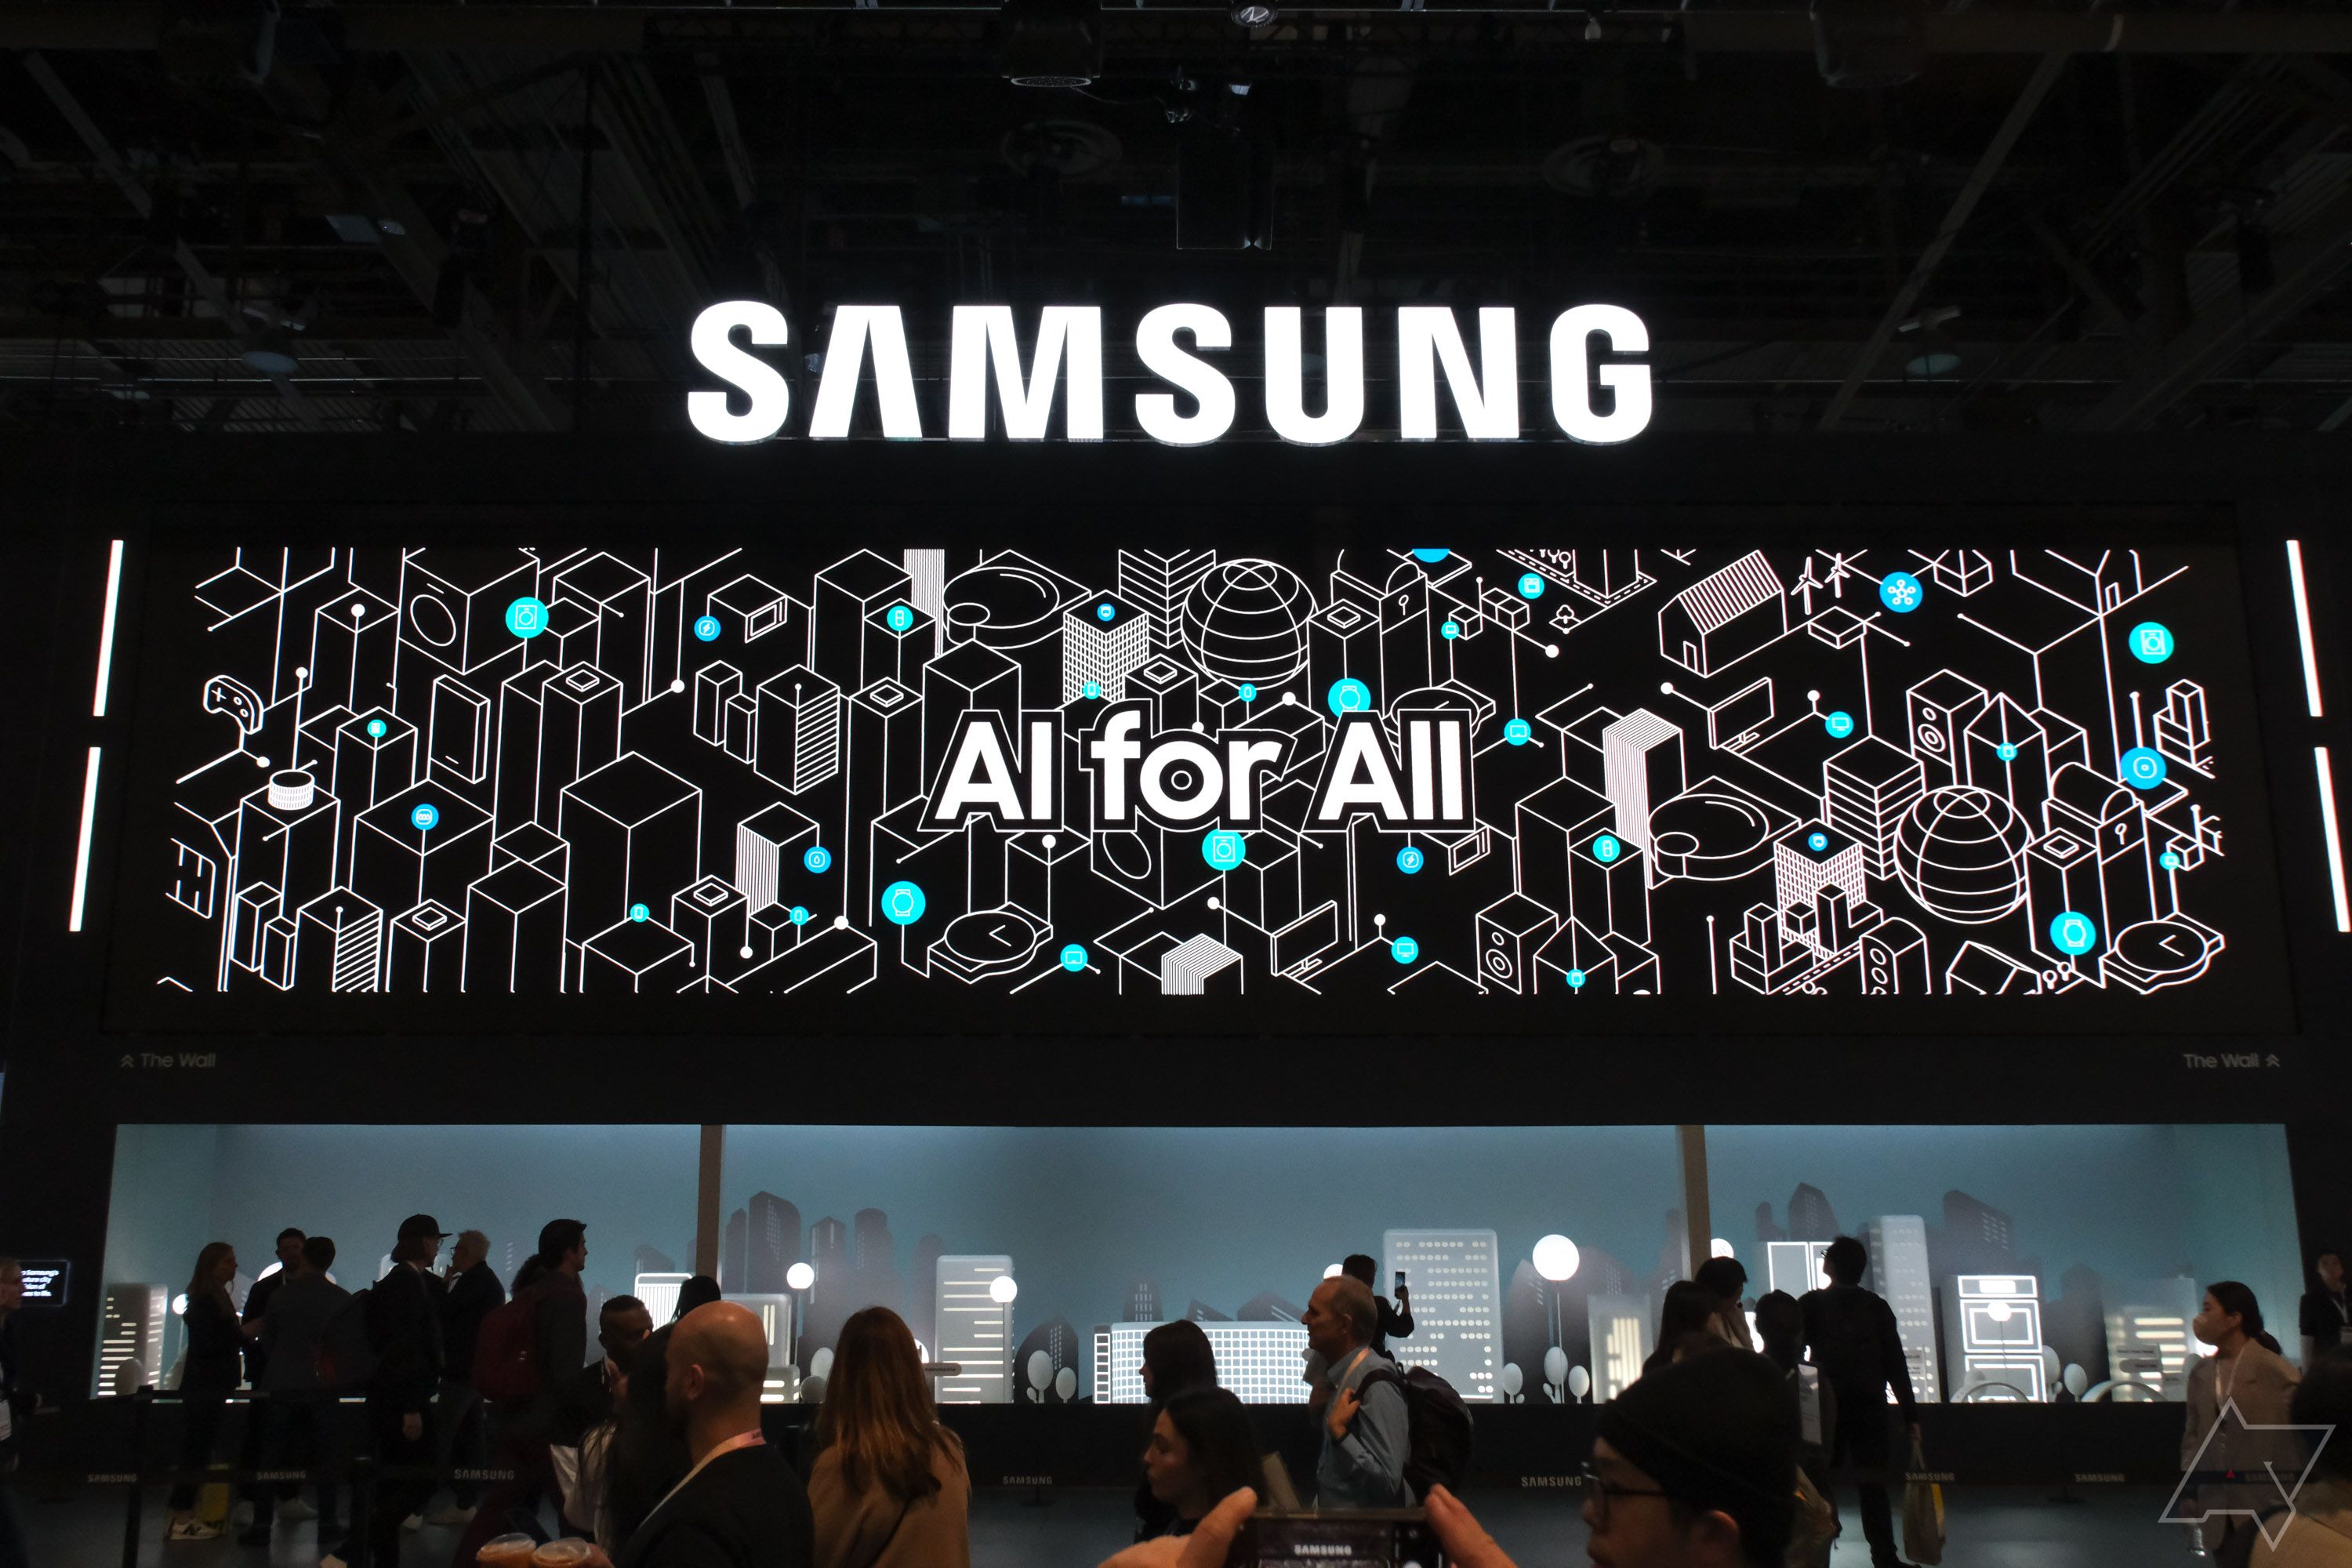 Um grande display de evento com a indicação Samsung AI for All